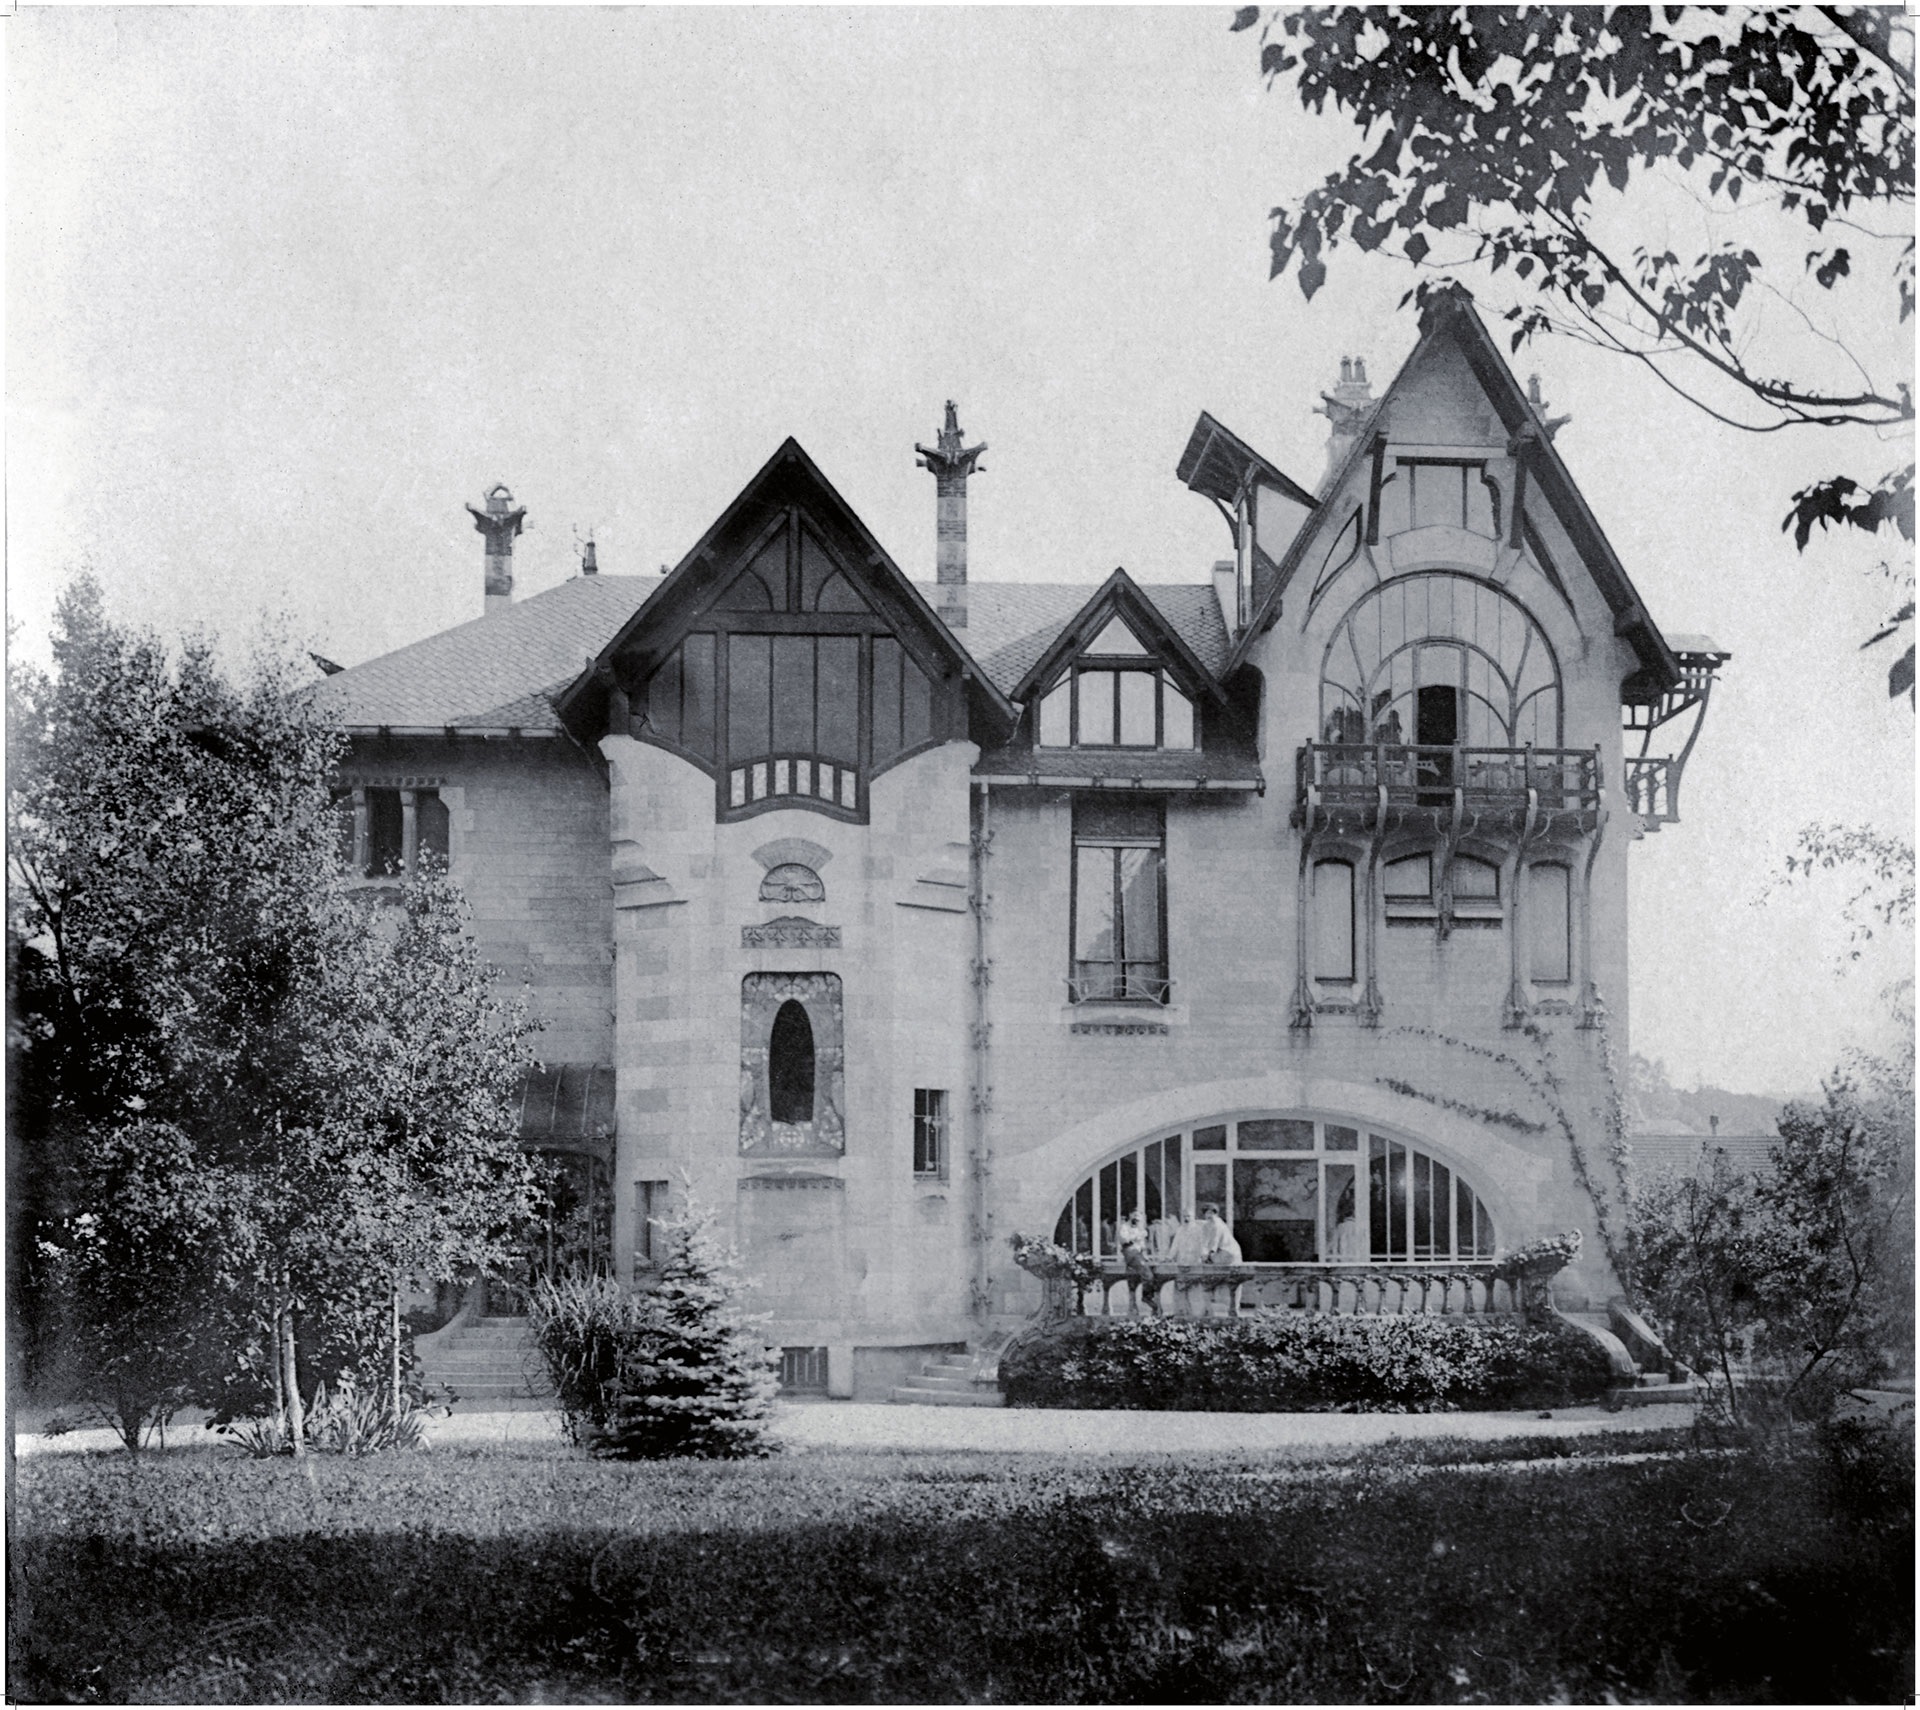 The Villa Majorelle in Nancy